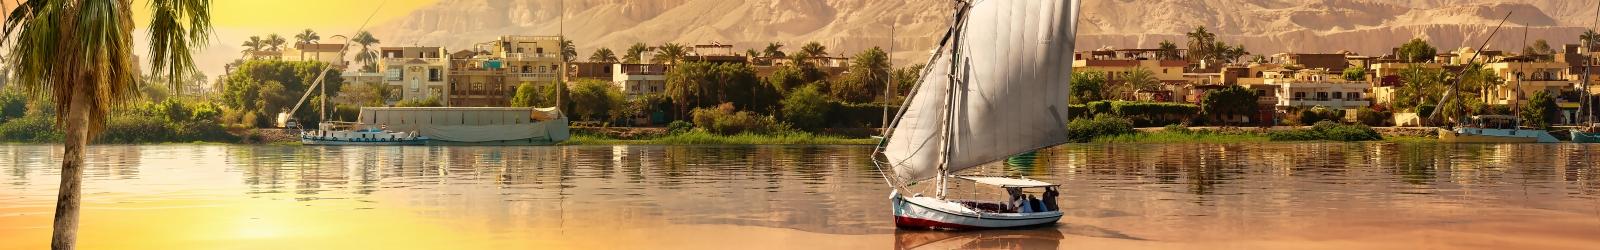 Itinerario Crociera sul Nilo: il percorso e le tappe | Turisanda